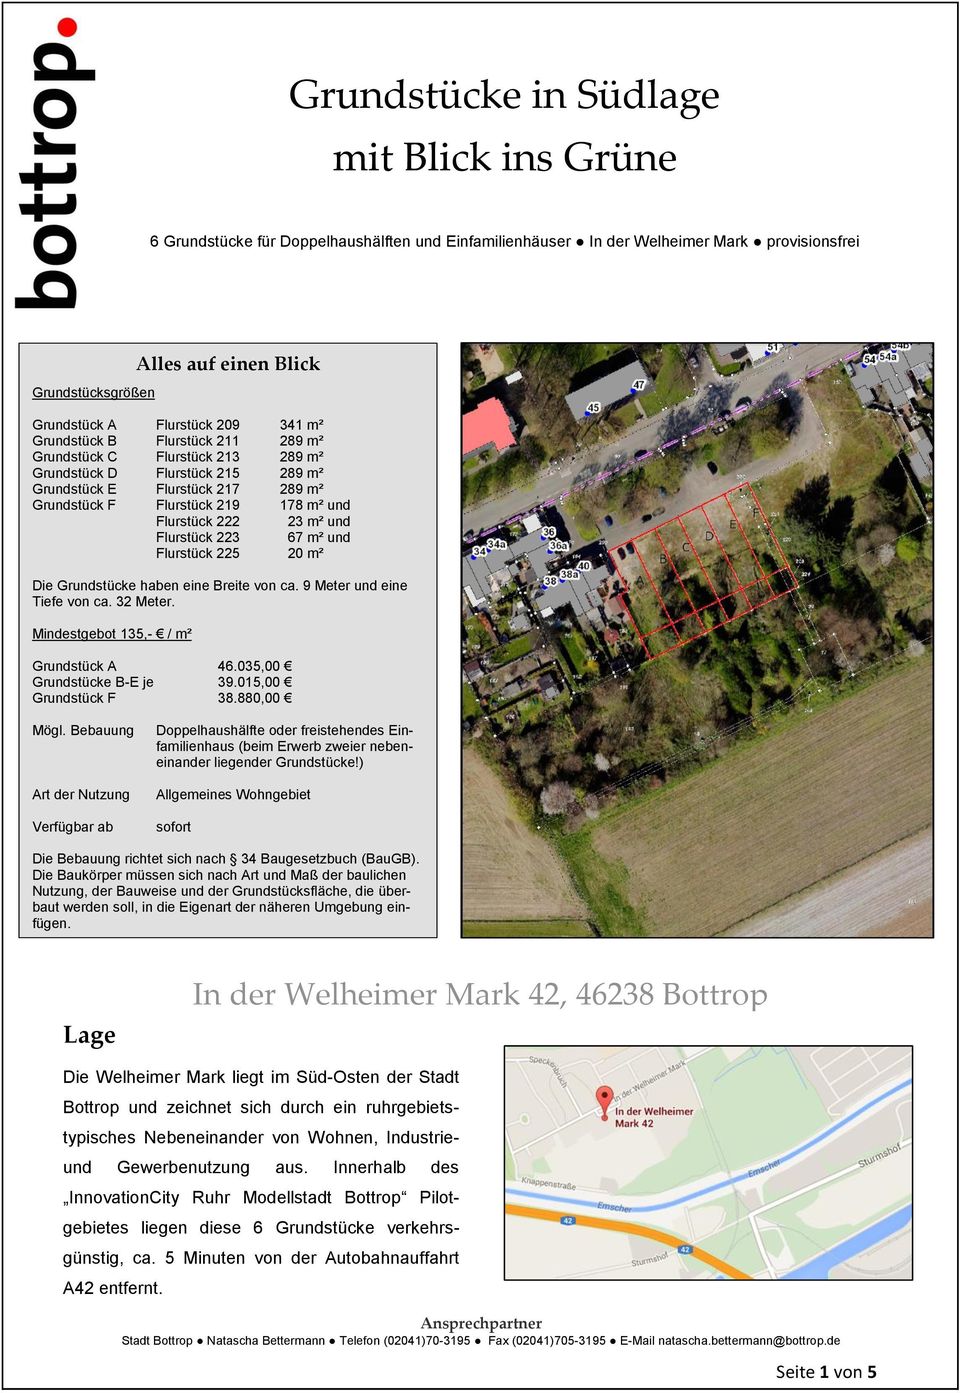 Flurstück 222 23 m² und Flurstück 223 67 m² und Flurstück 225 20 m² Die Grundstücke haben eine Breite von ca. 9 Meter und eine Tiefe von ca. 32 Meter. Mindestgebot 135,- / m² Grundstück A 46.